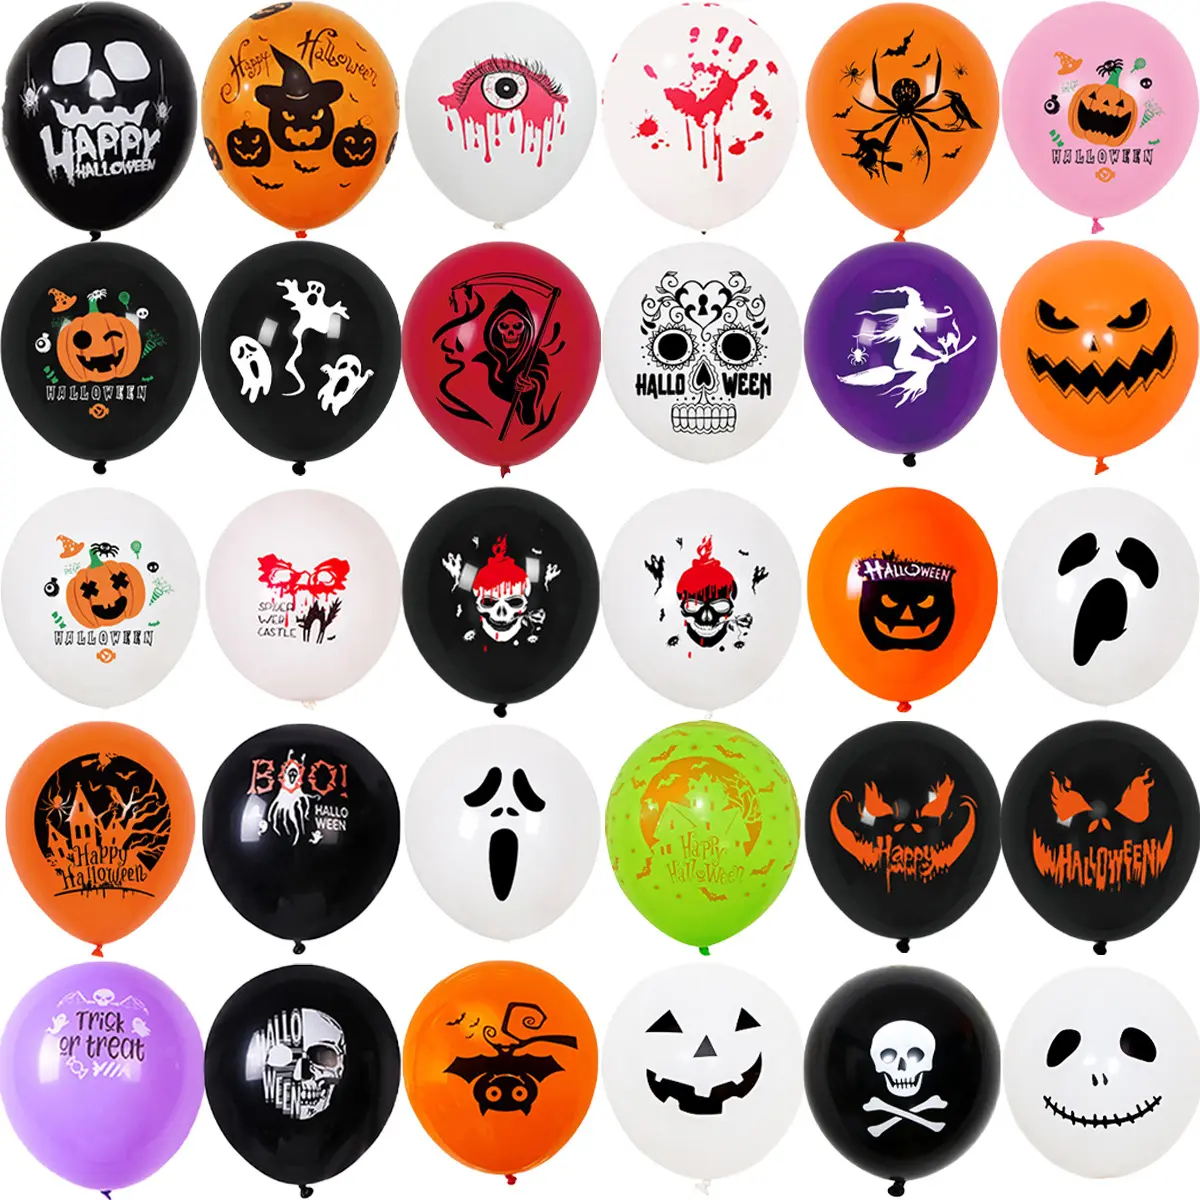 50Pcs palloncini di Halloween disegni multipli 12 pollici nero arancione bianco fantasma faccia palloncini in lattice decorazioni per la festa di Halloween